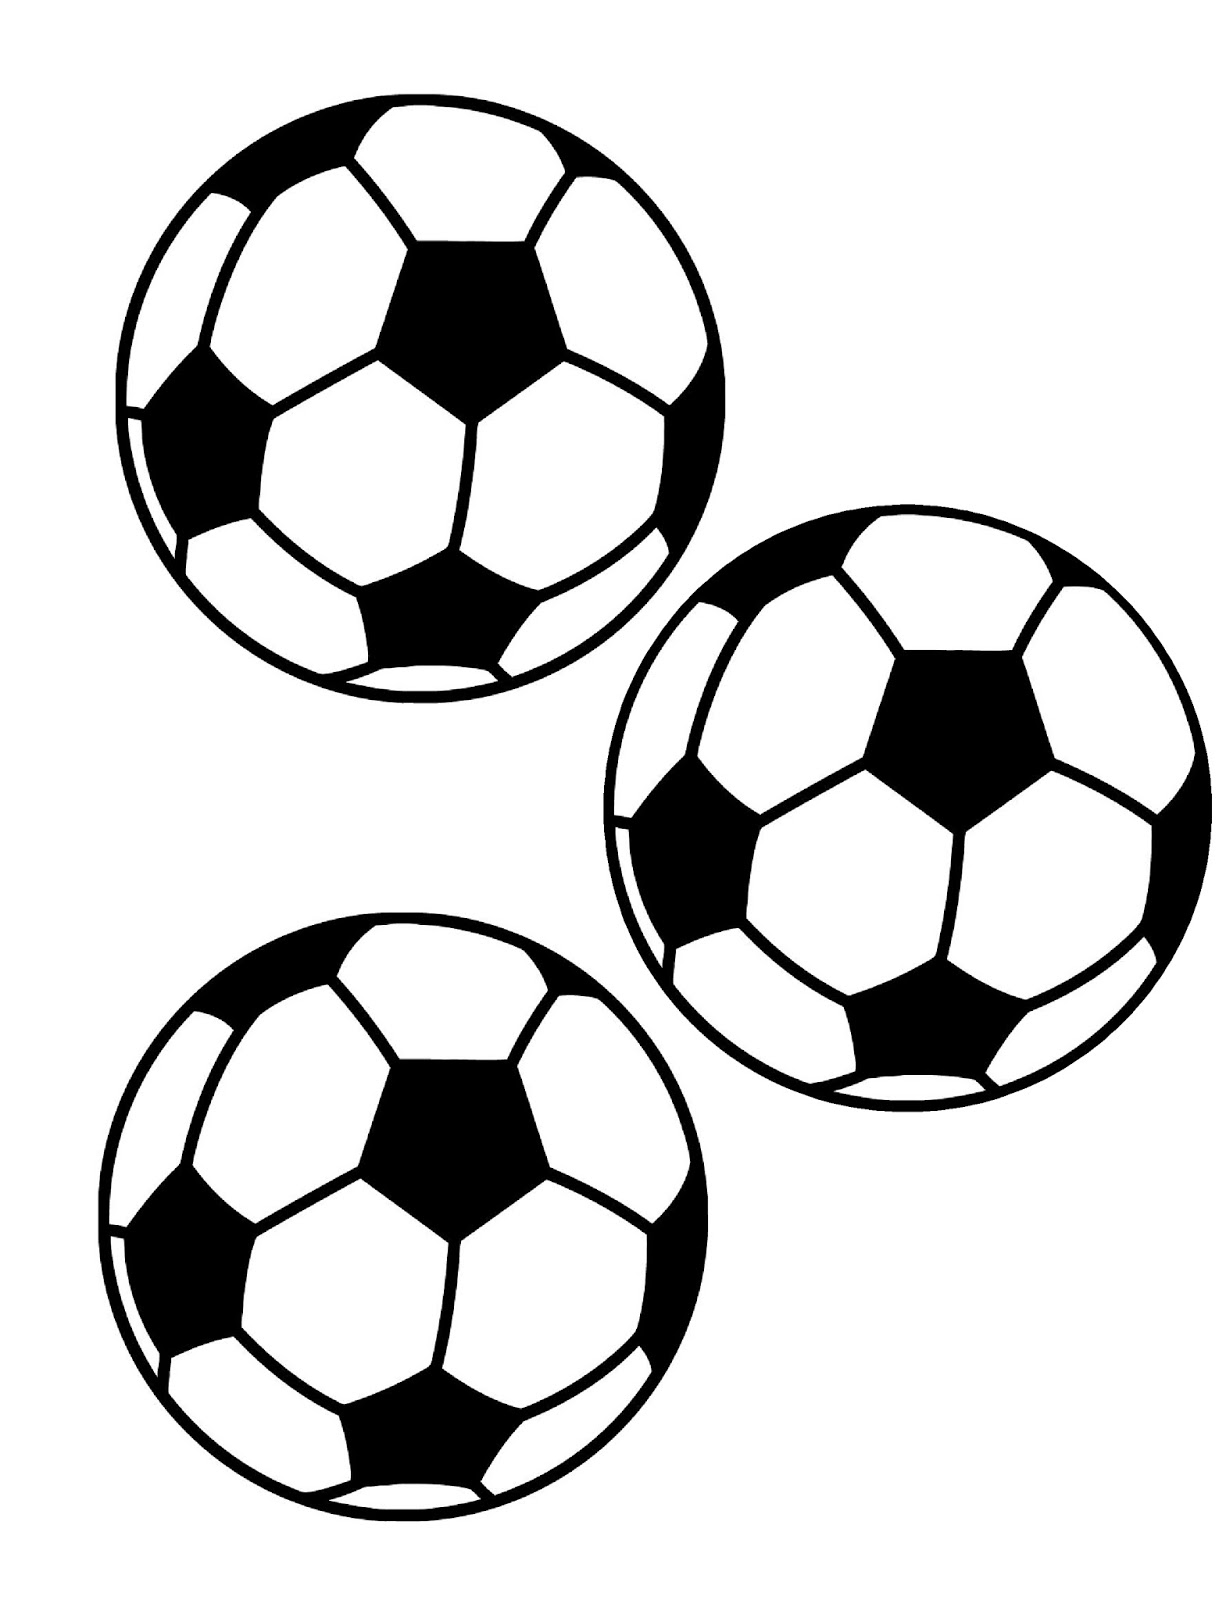 soccer-ball-printable-image-printable-blank-world